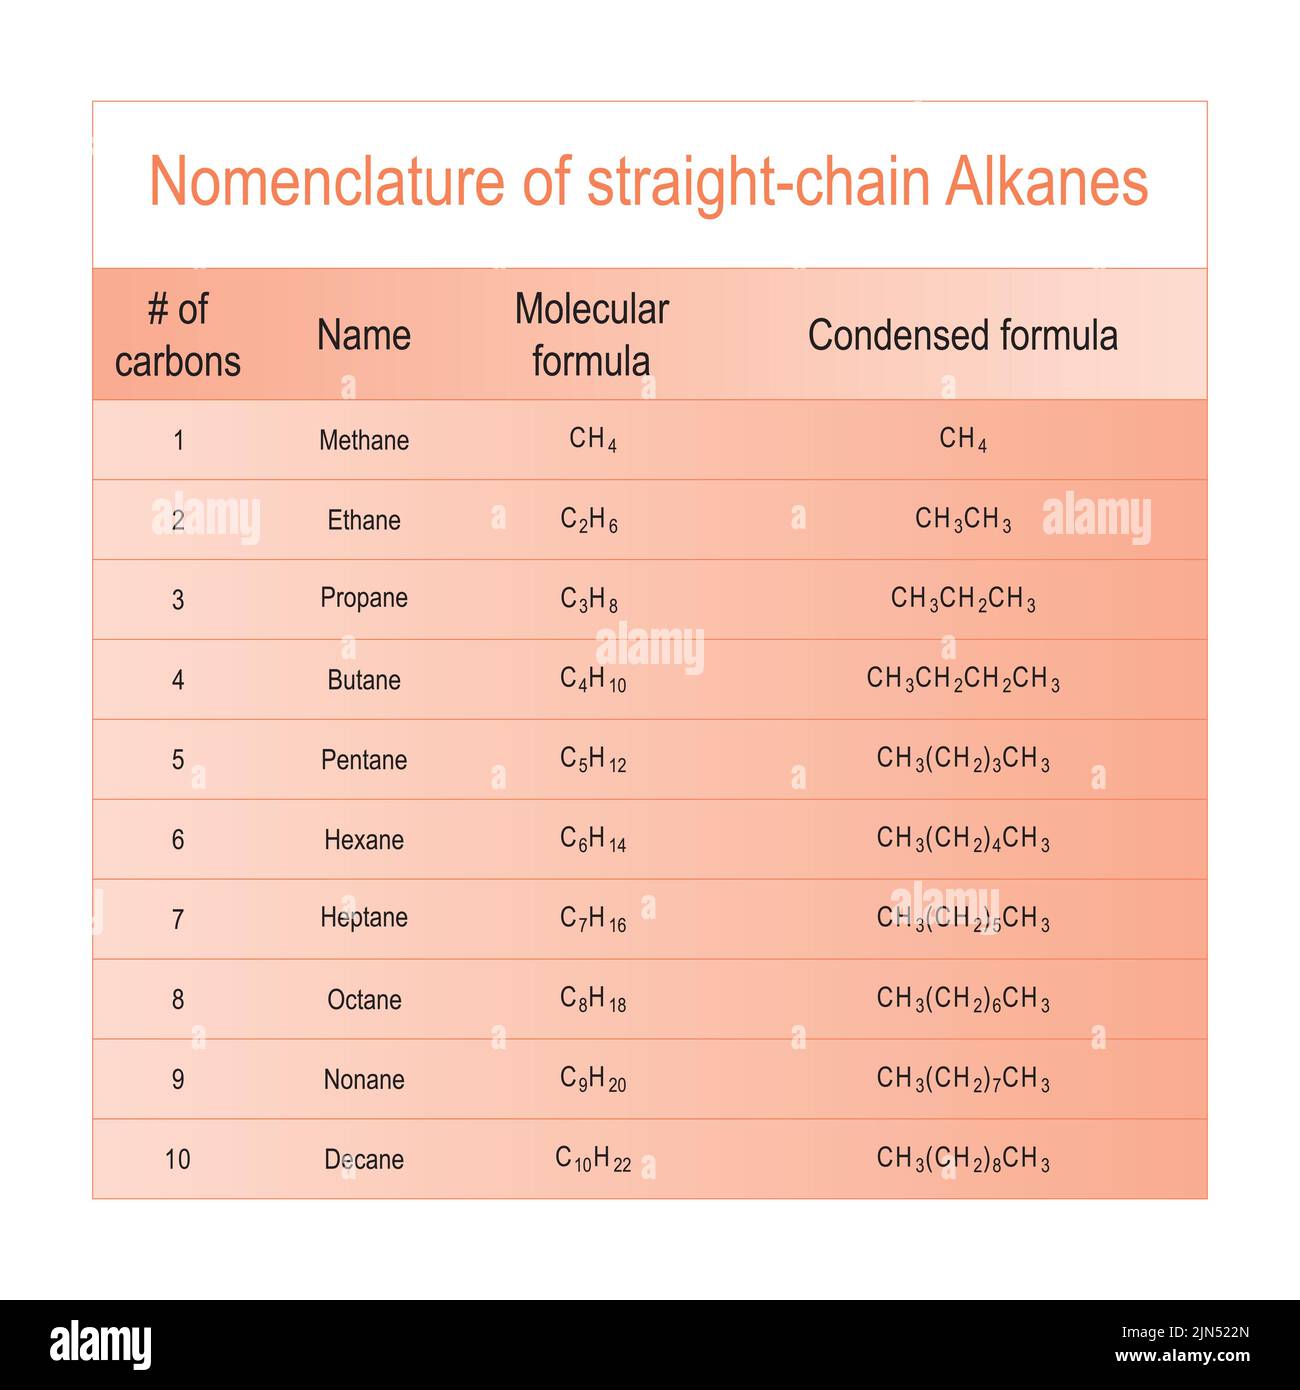 Tabelle der Nomenklatur für geradkettige Alkane - Methan durch Decan. Ausbildung zur organischen Chemie - orange. Stock Vektor